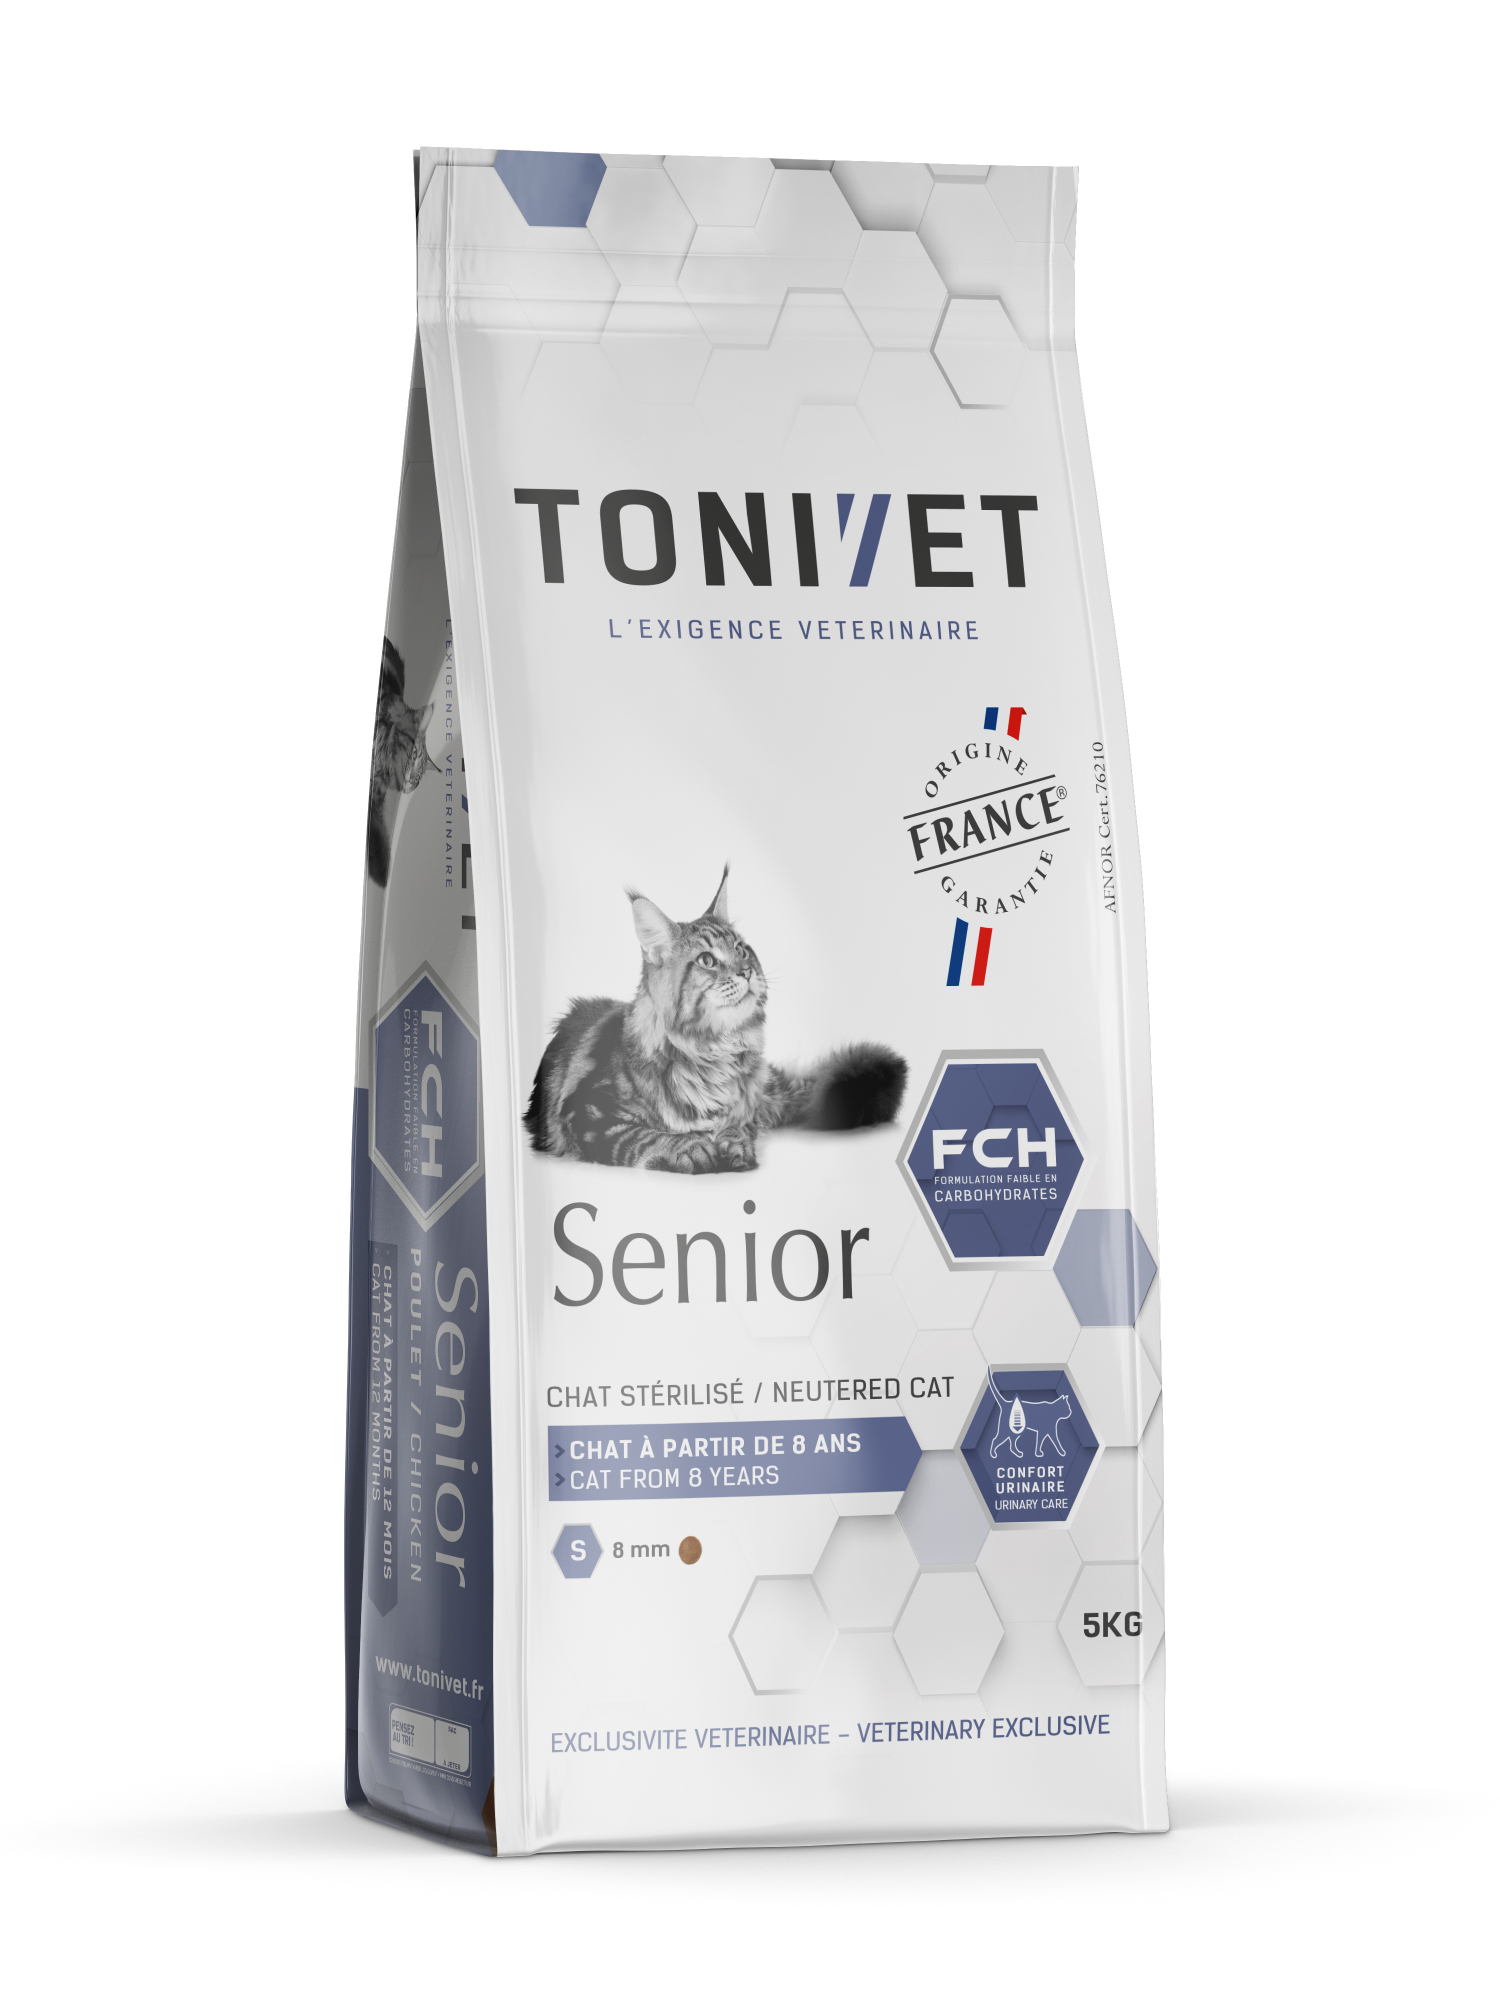 TONIVET Senior para gato sénior ou gato sénior esterilizado